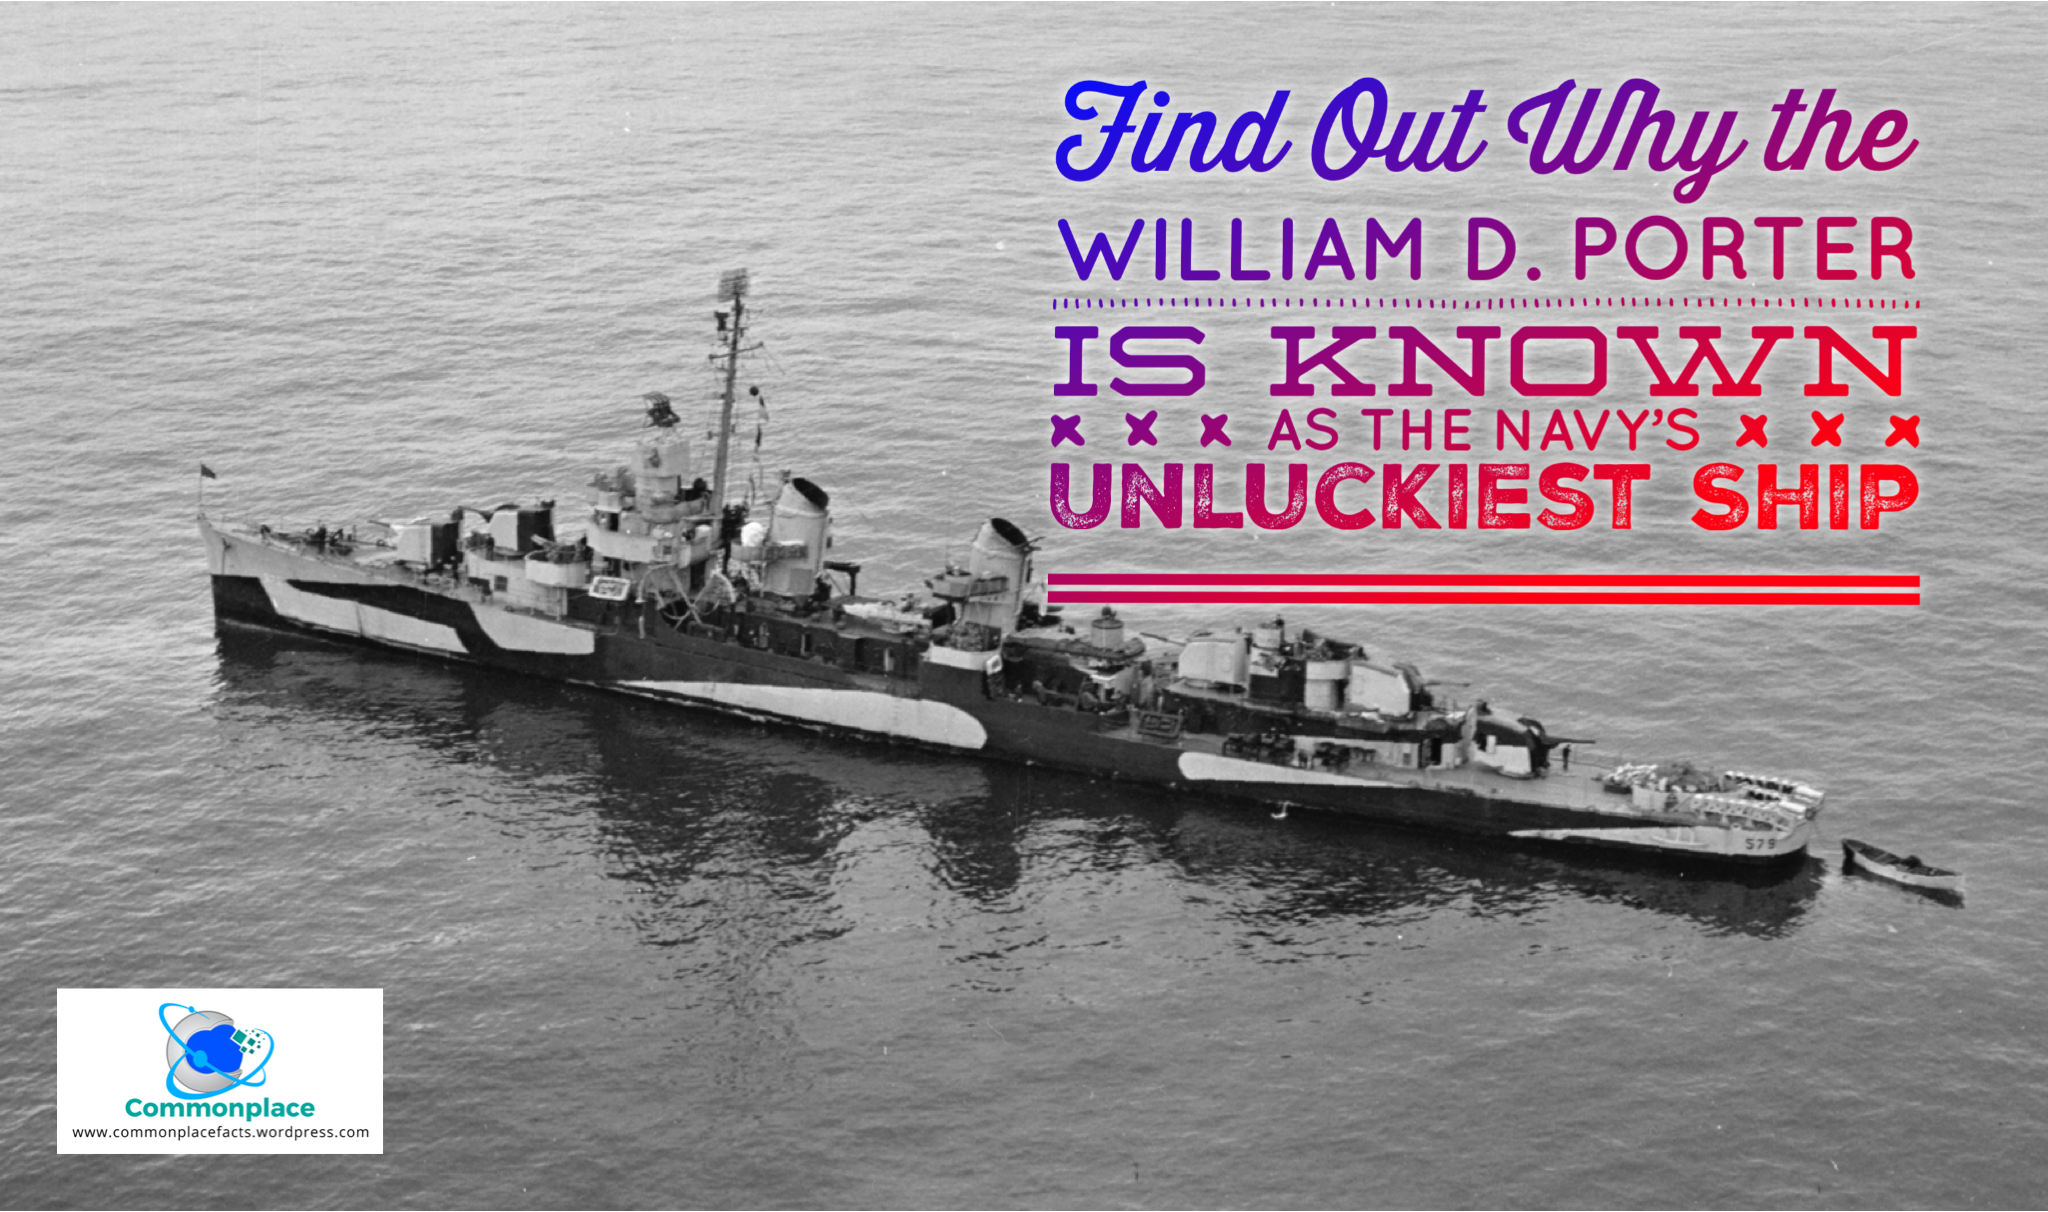 #USN #Navy #USNavy #WilliamDPorter #WWII